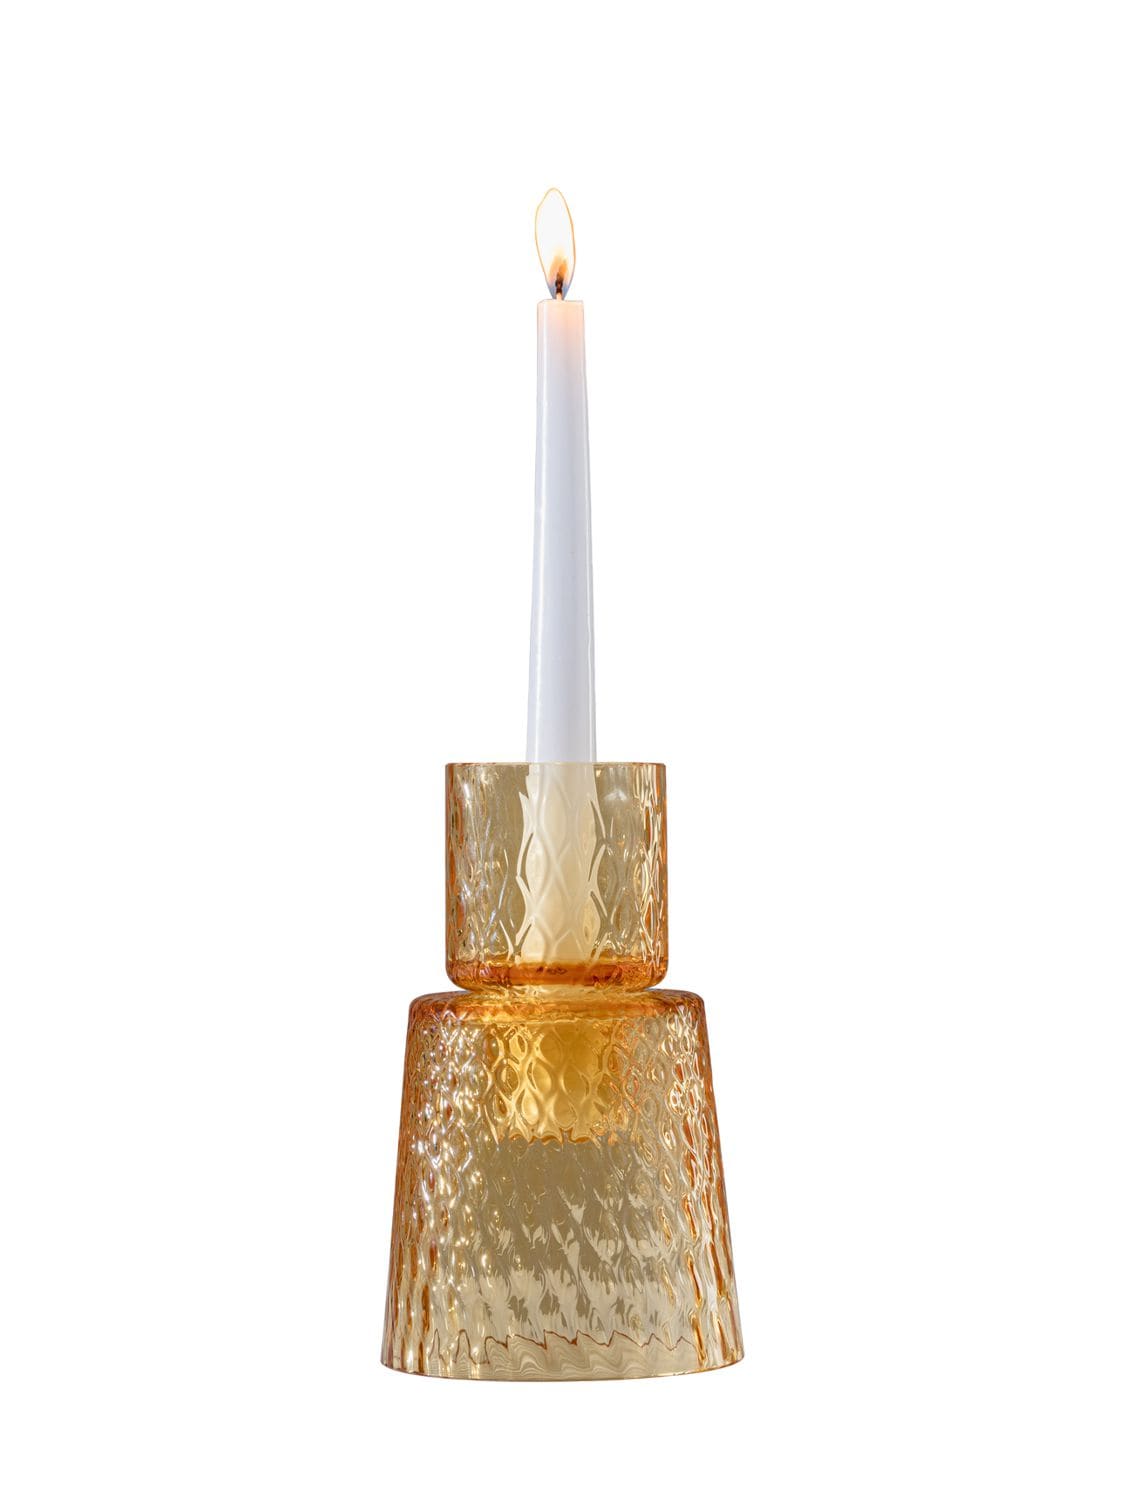 Image of Campanile Candleholder